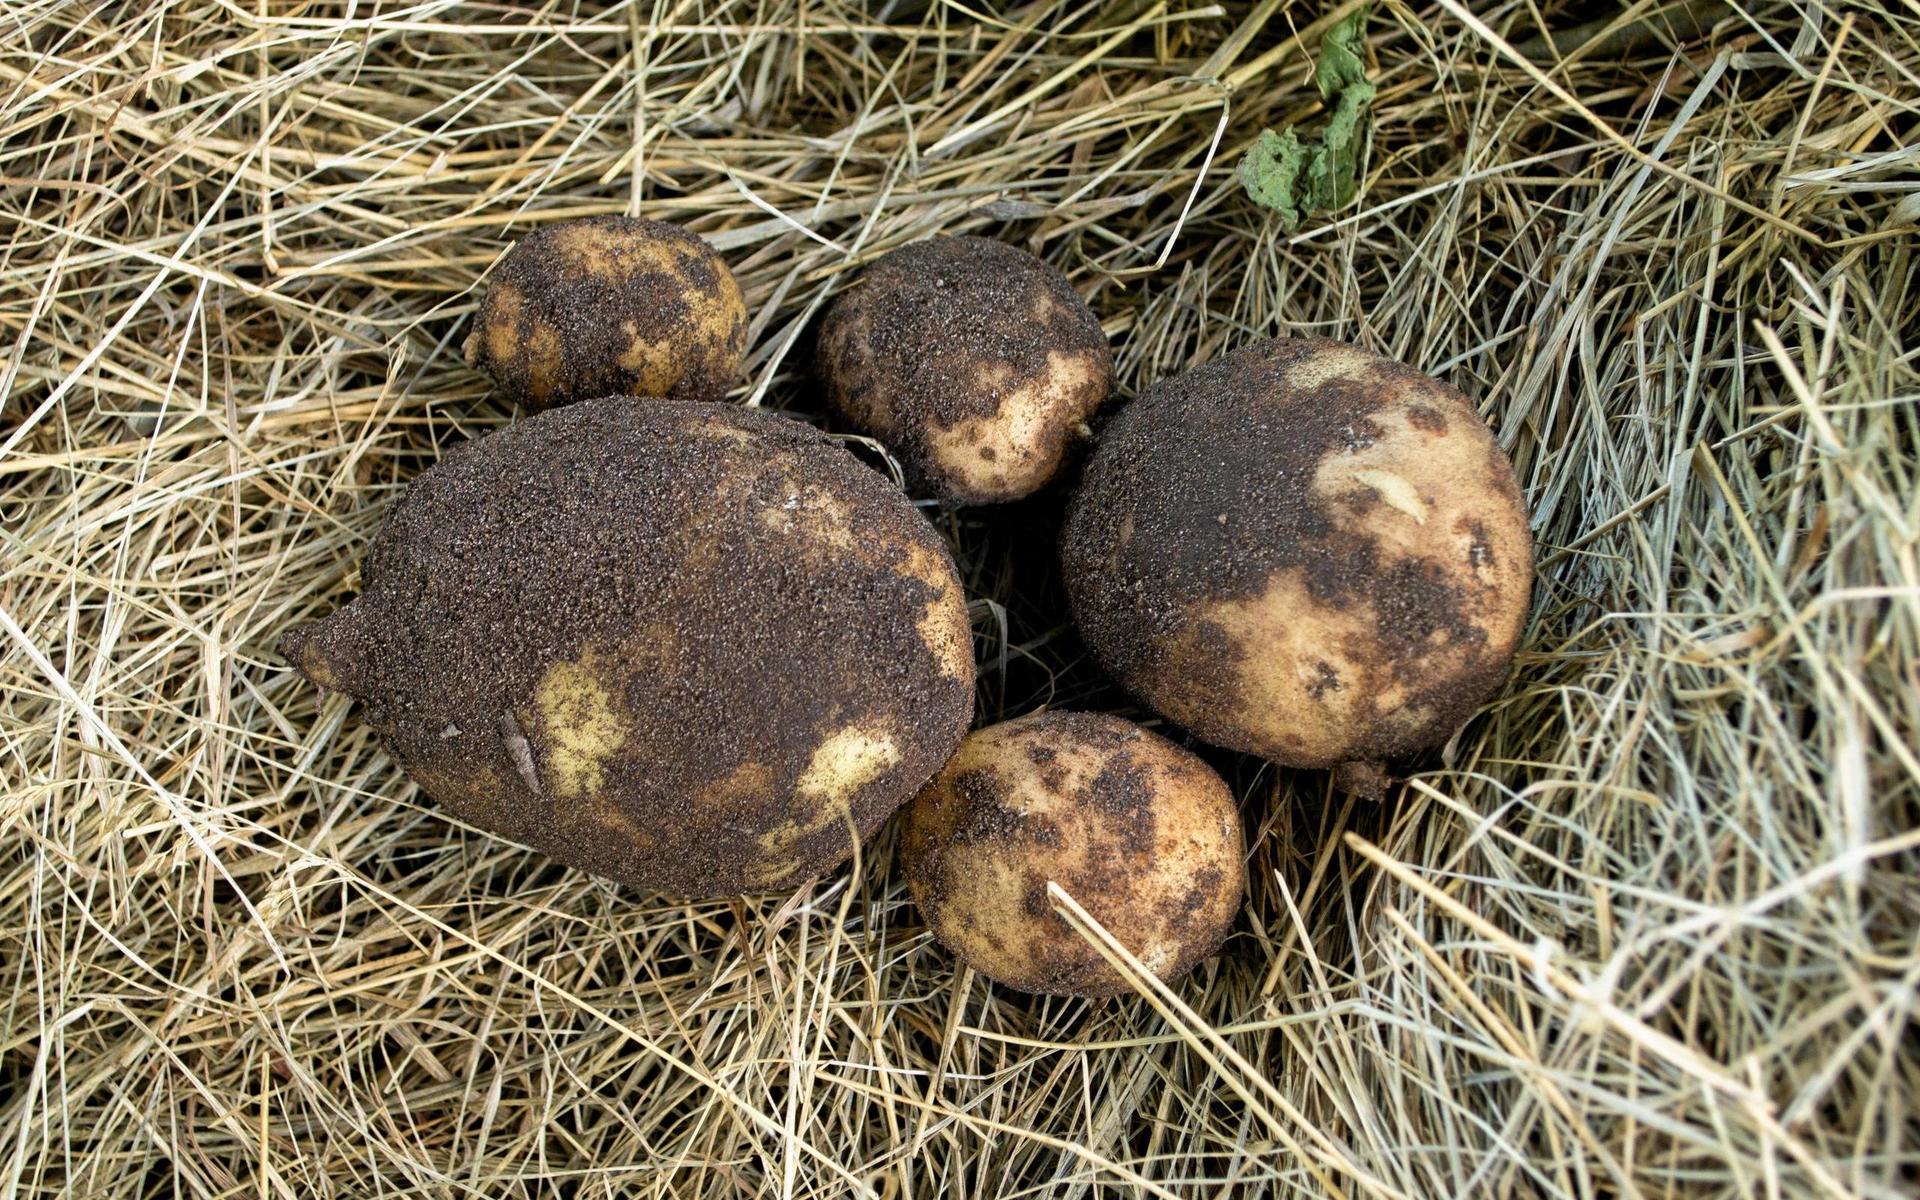 Sorten ’Connect’ är utsedd till årets potatis 2020. Självklart måste Ronja prova att odla den!